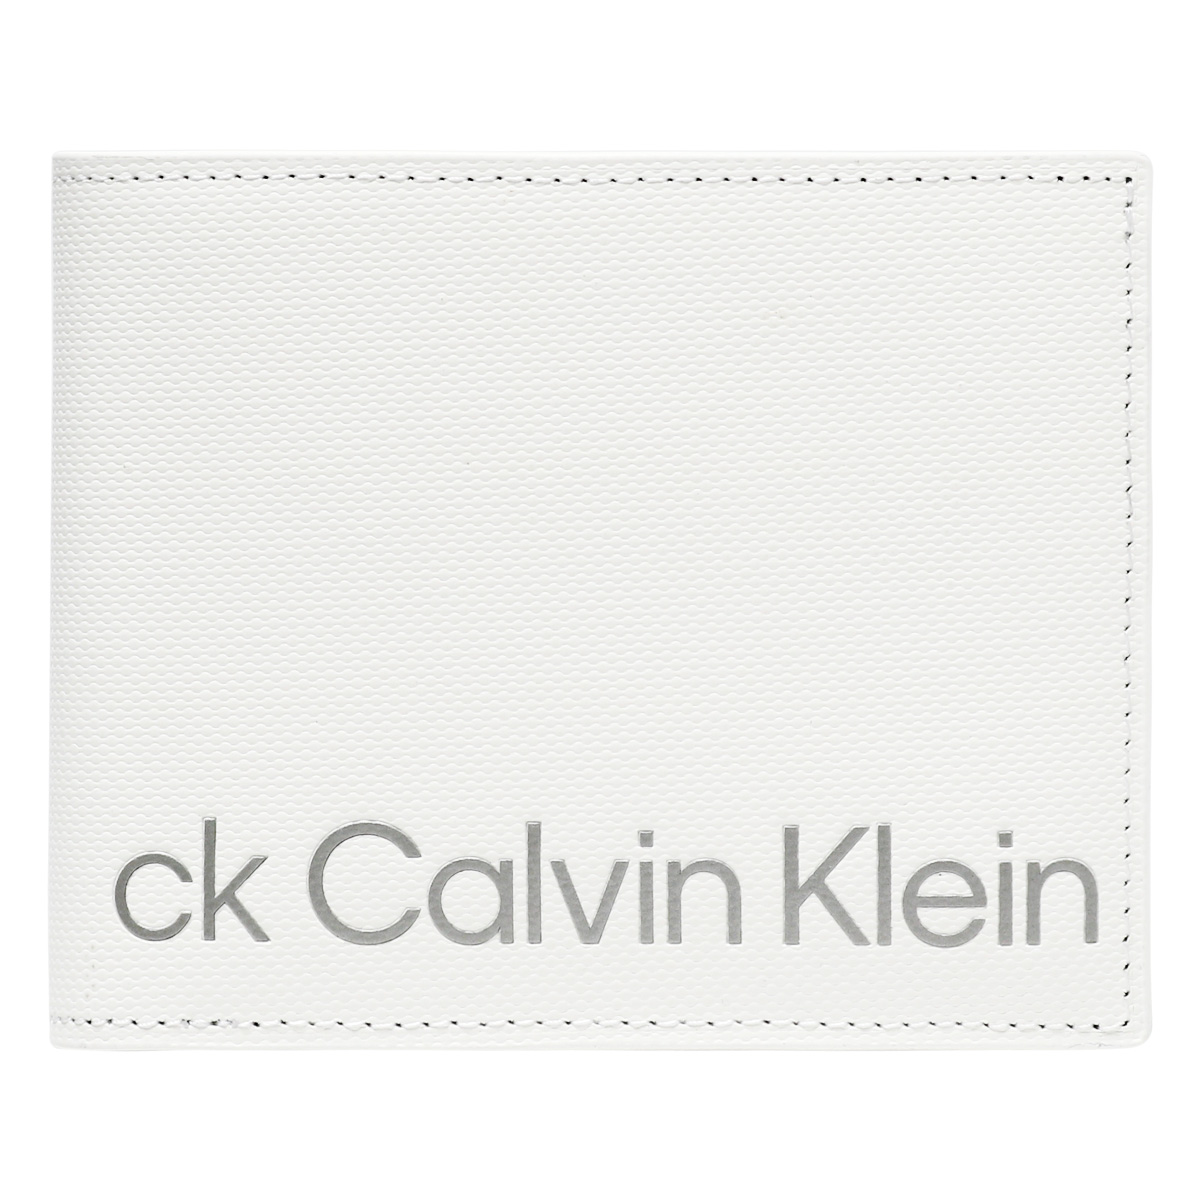 シーケー カルバンクライン 財布 二つ折り 本革 メンズ 841604 ガイア CK CALVIN ...